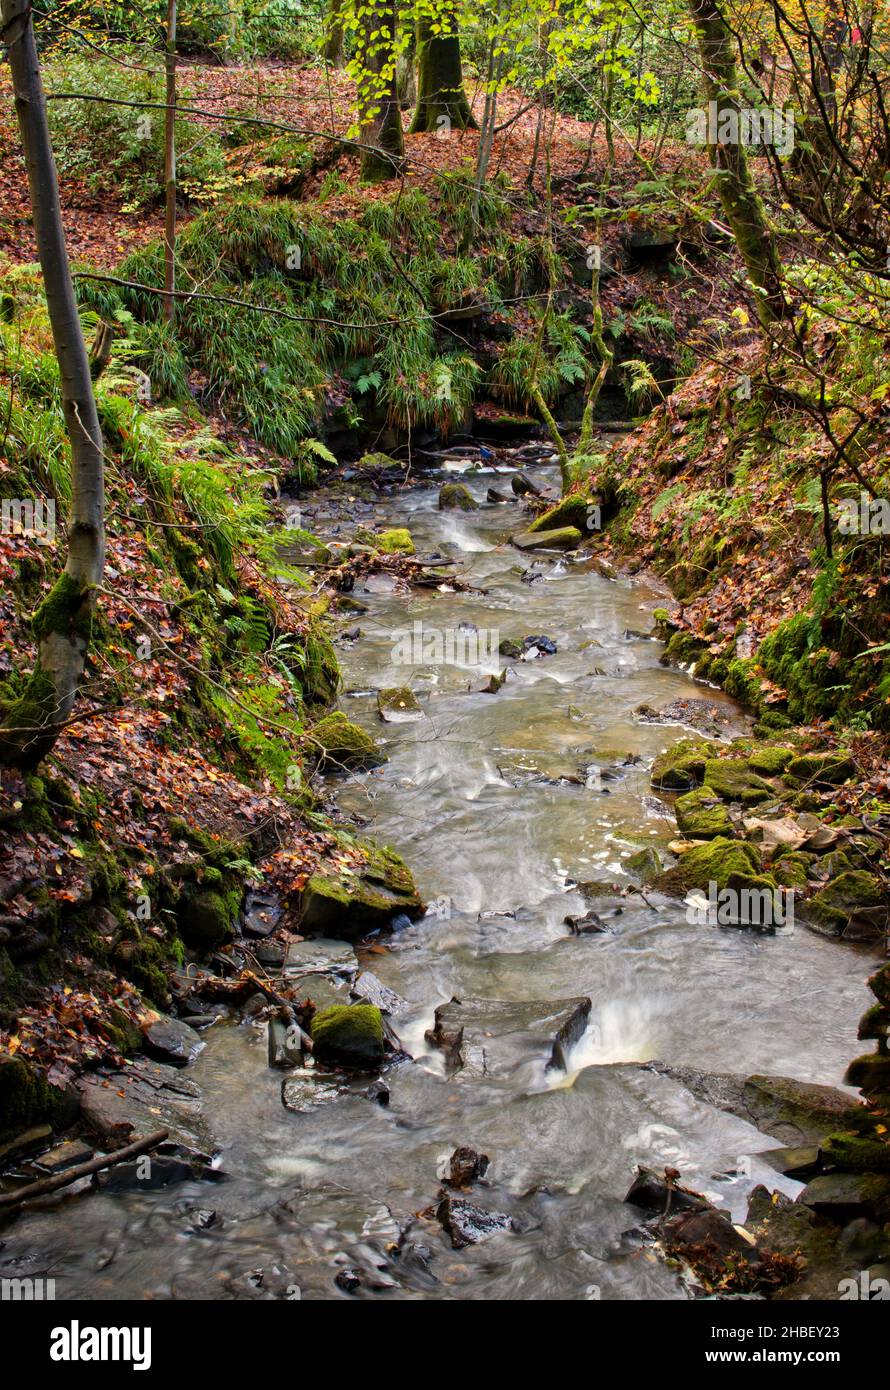 Mirando hacia abajo en un arroyo del bosque en otoño, con hojas caídas en la orilla del río y árboles enmarcando la imagen Foto de stock